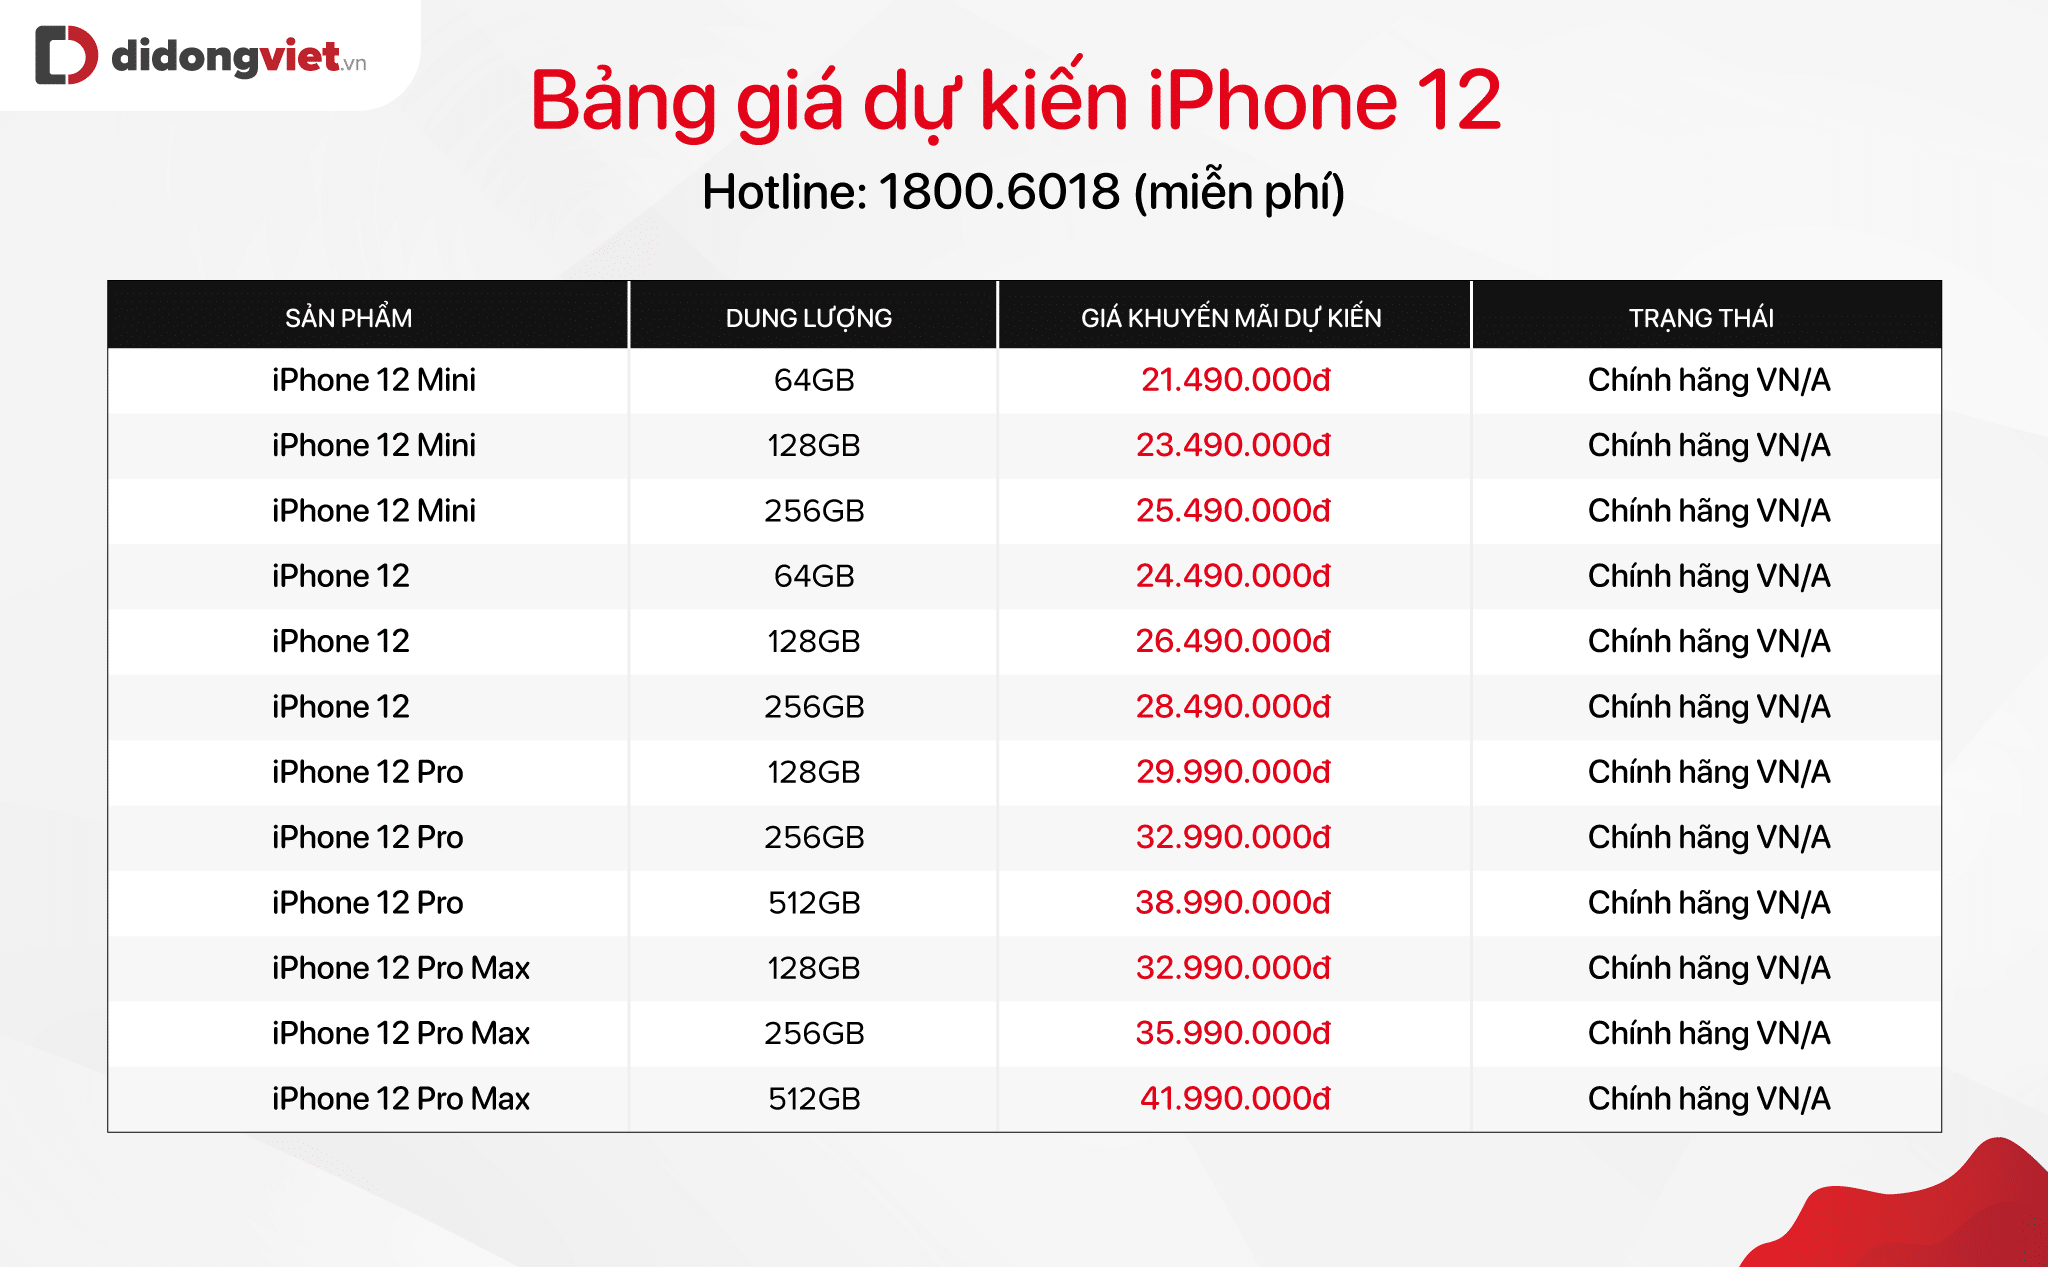 Cập nhật bảng giá iPhone cũ ngày 14/10. iPhone 12 chính thức ra mắt với 4 phiên bản